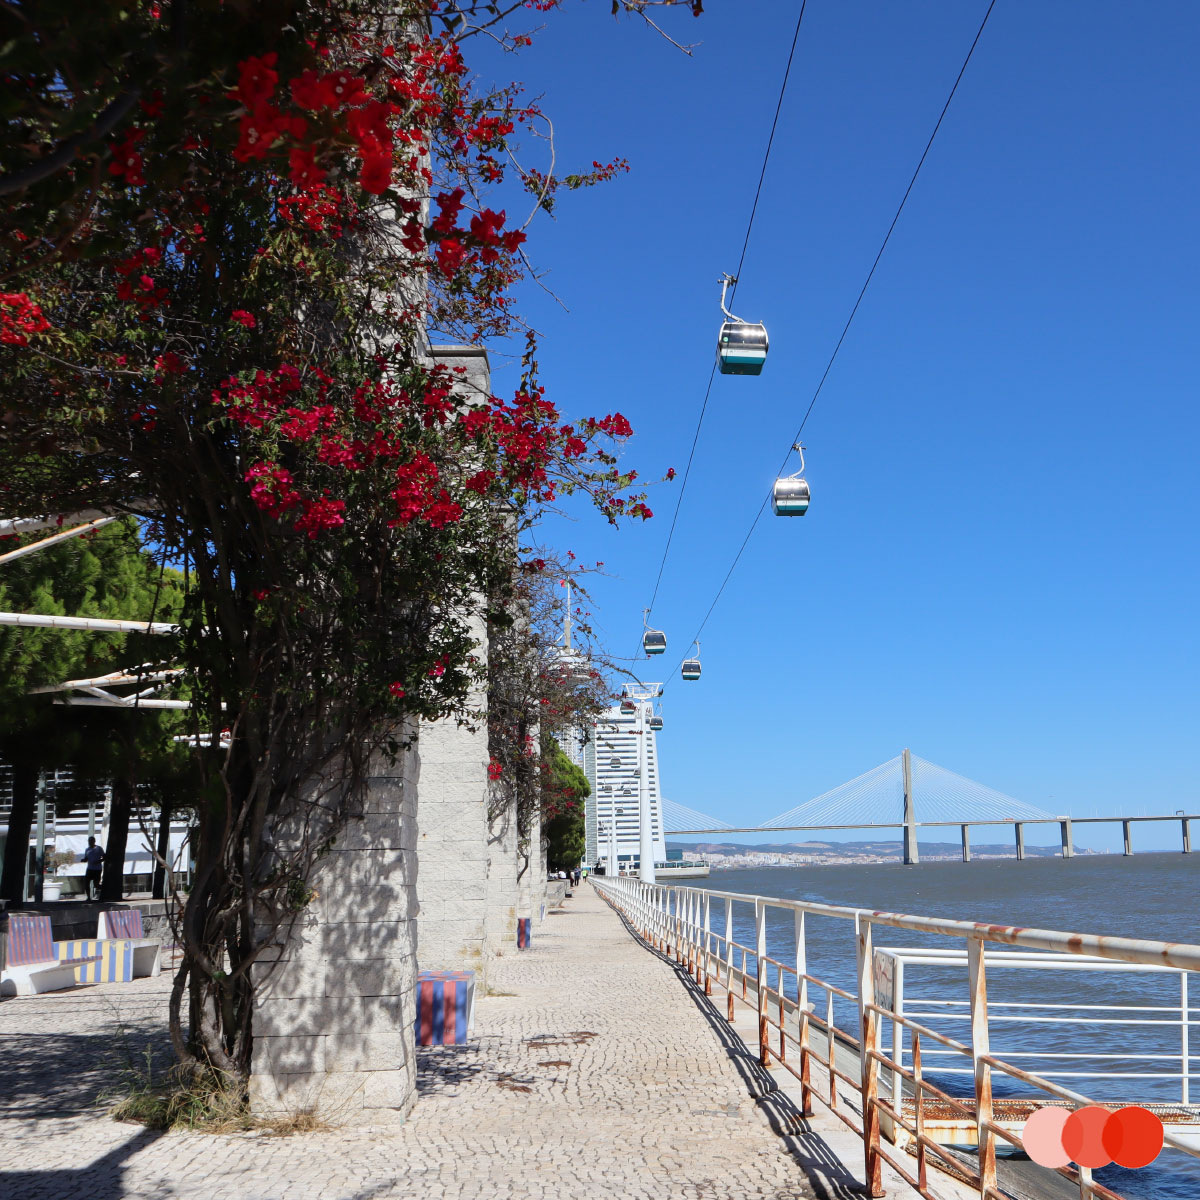 Modernes Lissabon – der Parque das Nações am Tejo